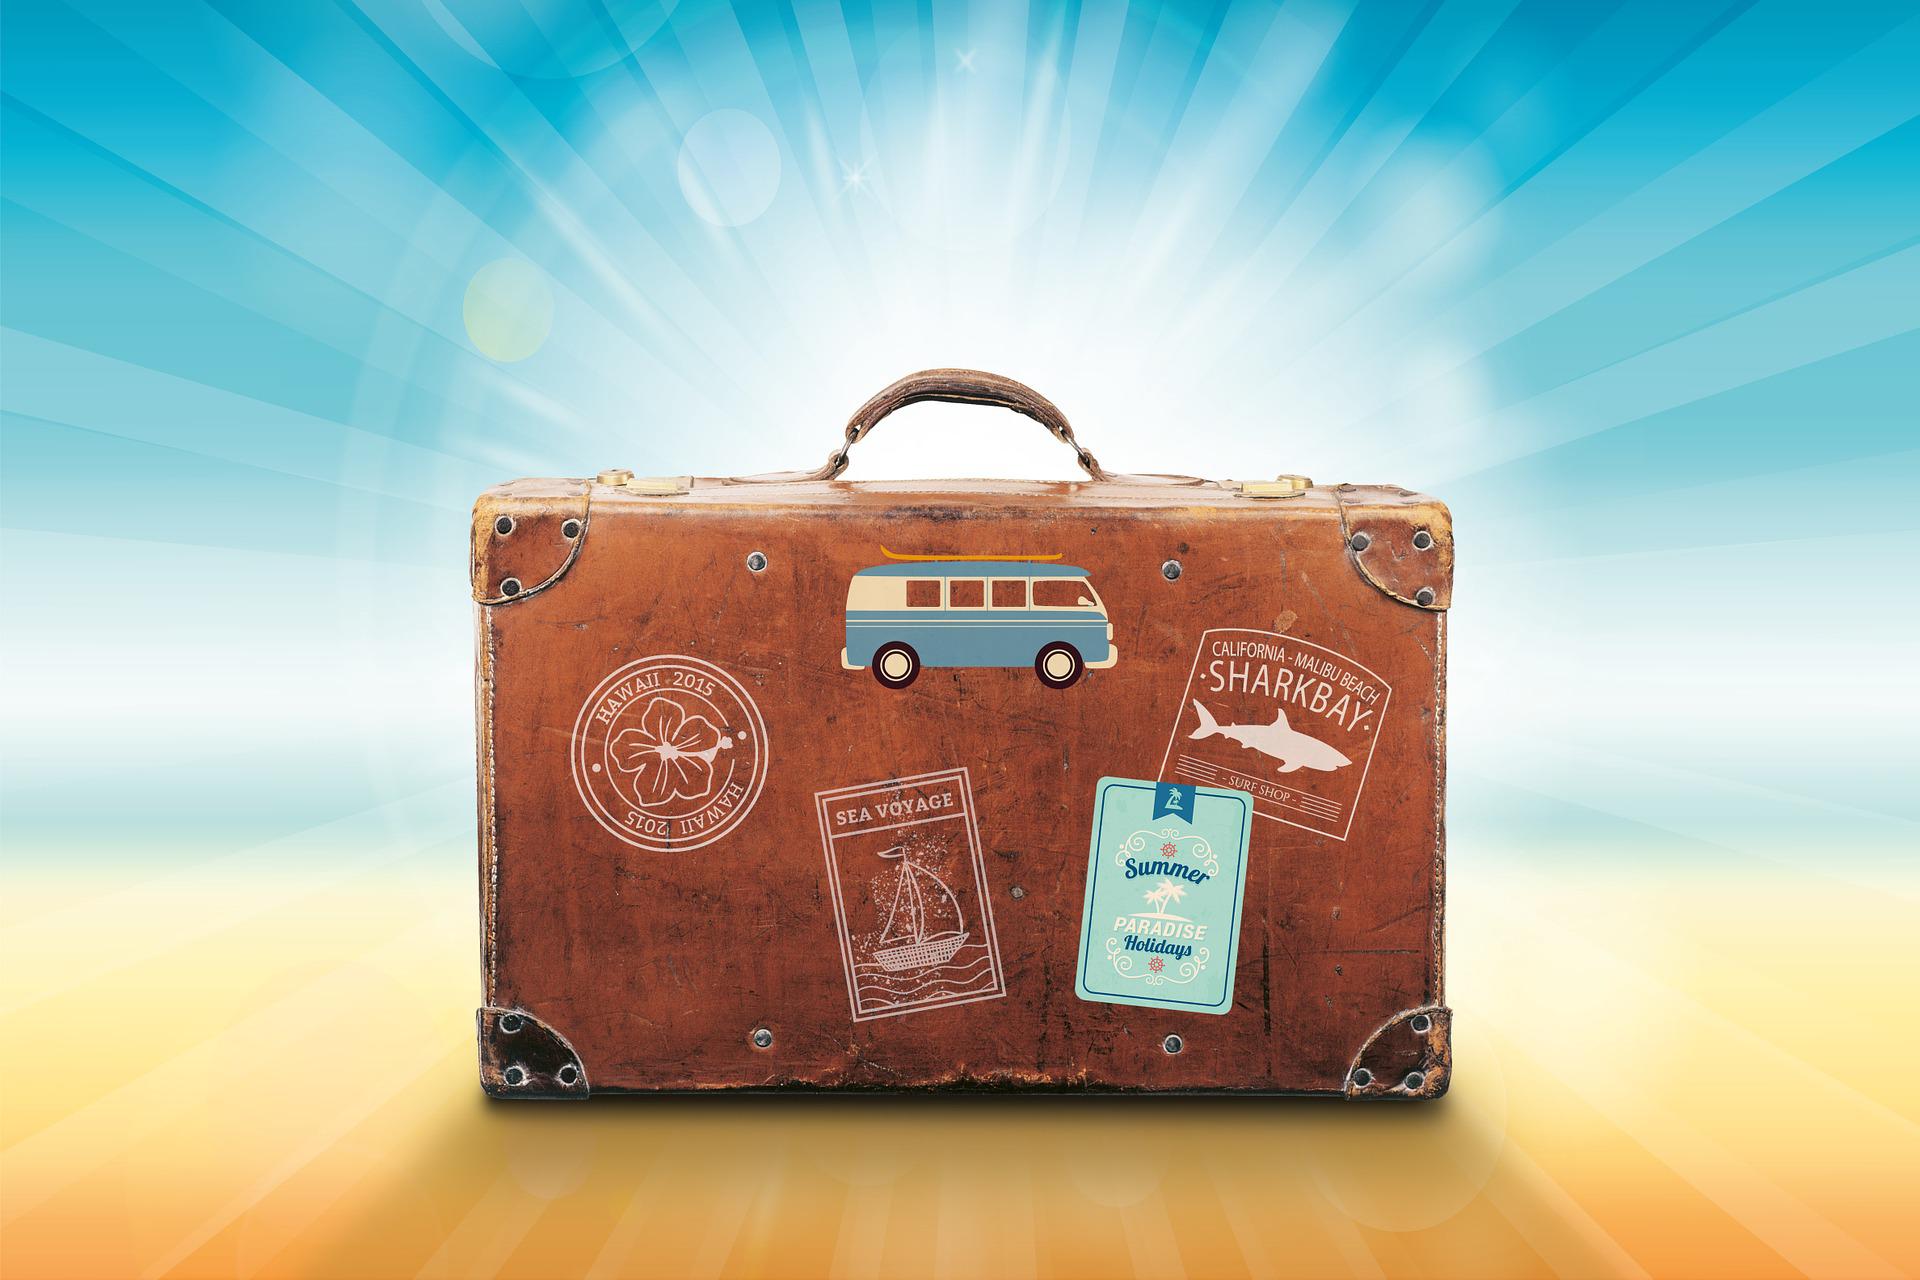 Krenite na putovanje bez briga : 10 pravila za uspješno pakiranje